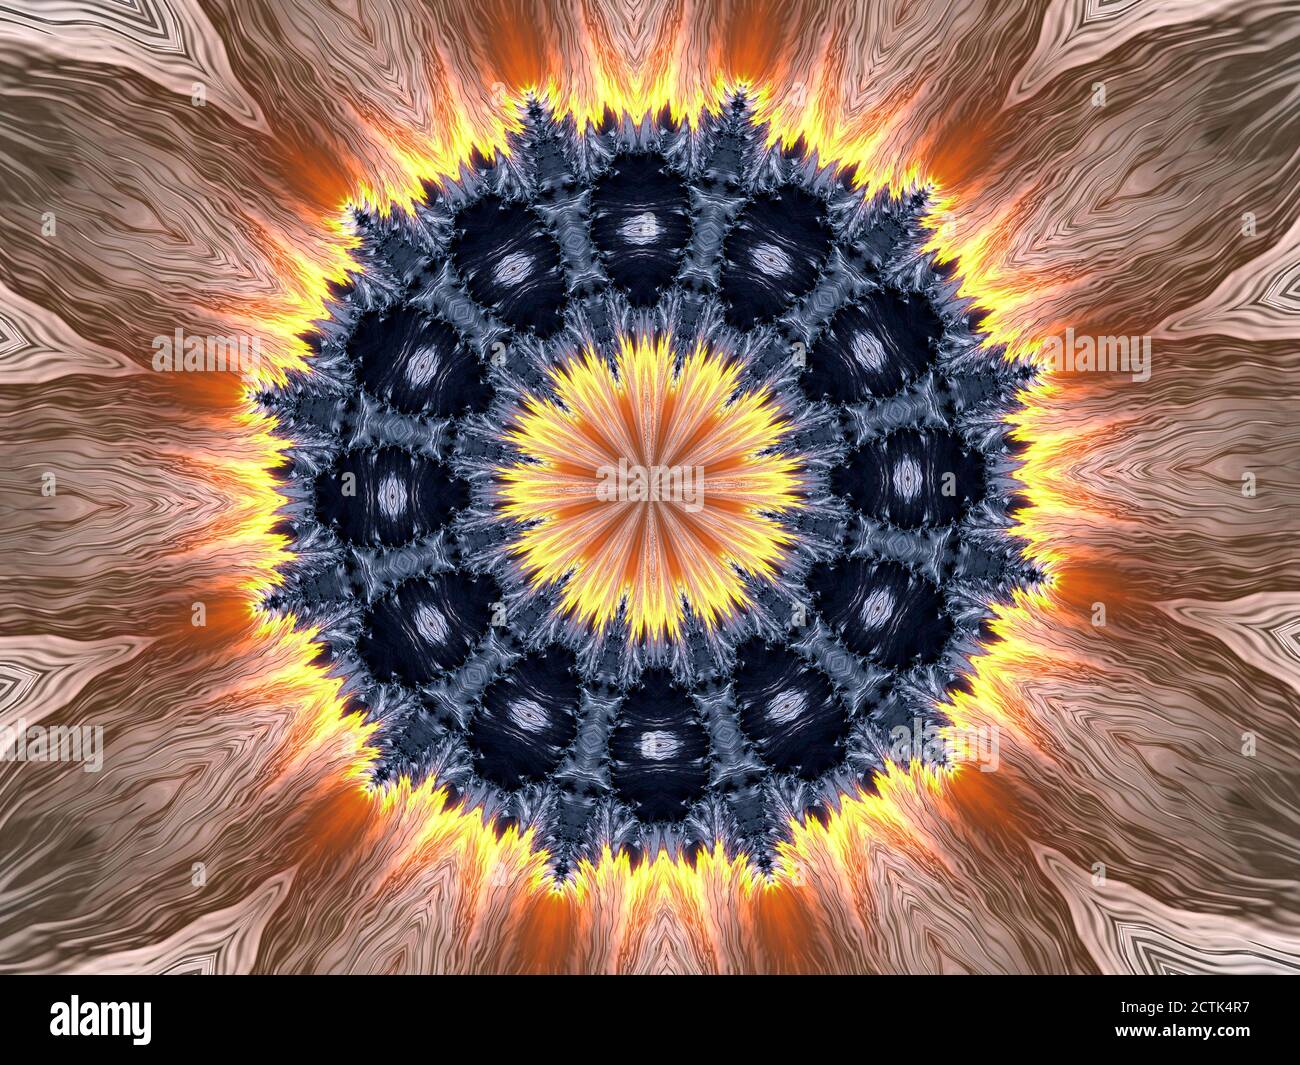 Death Star - Flaming schwarzen kaleidoskopischen Stern Illustration Stockfoto